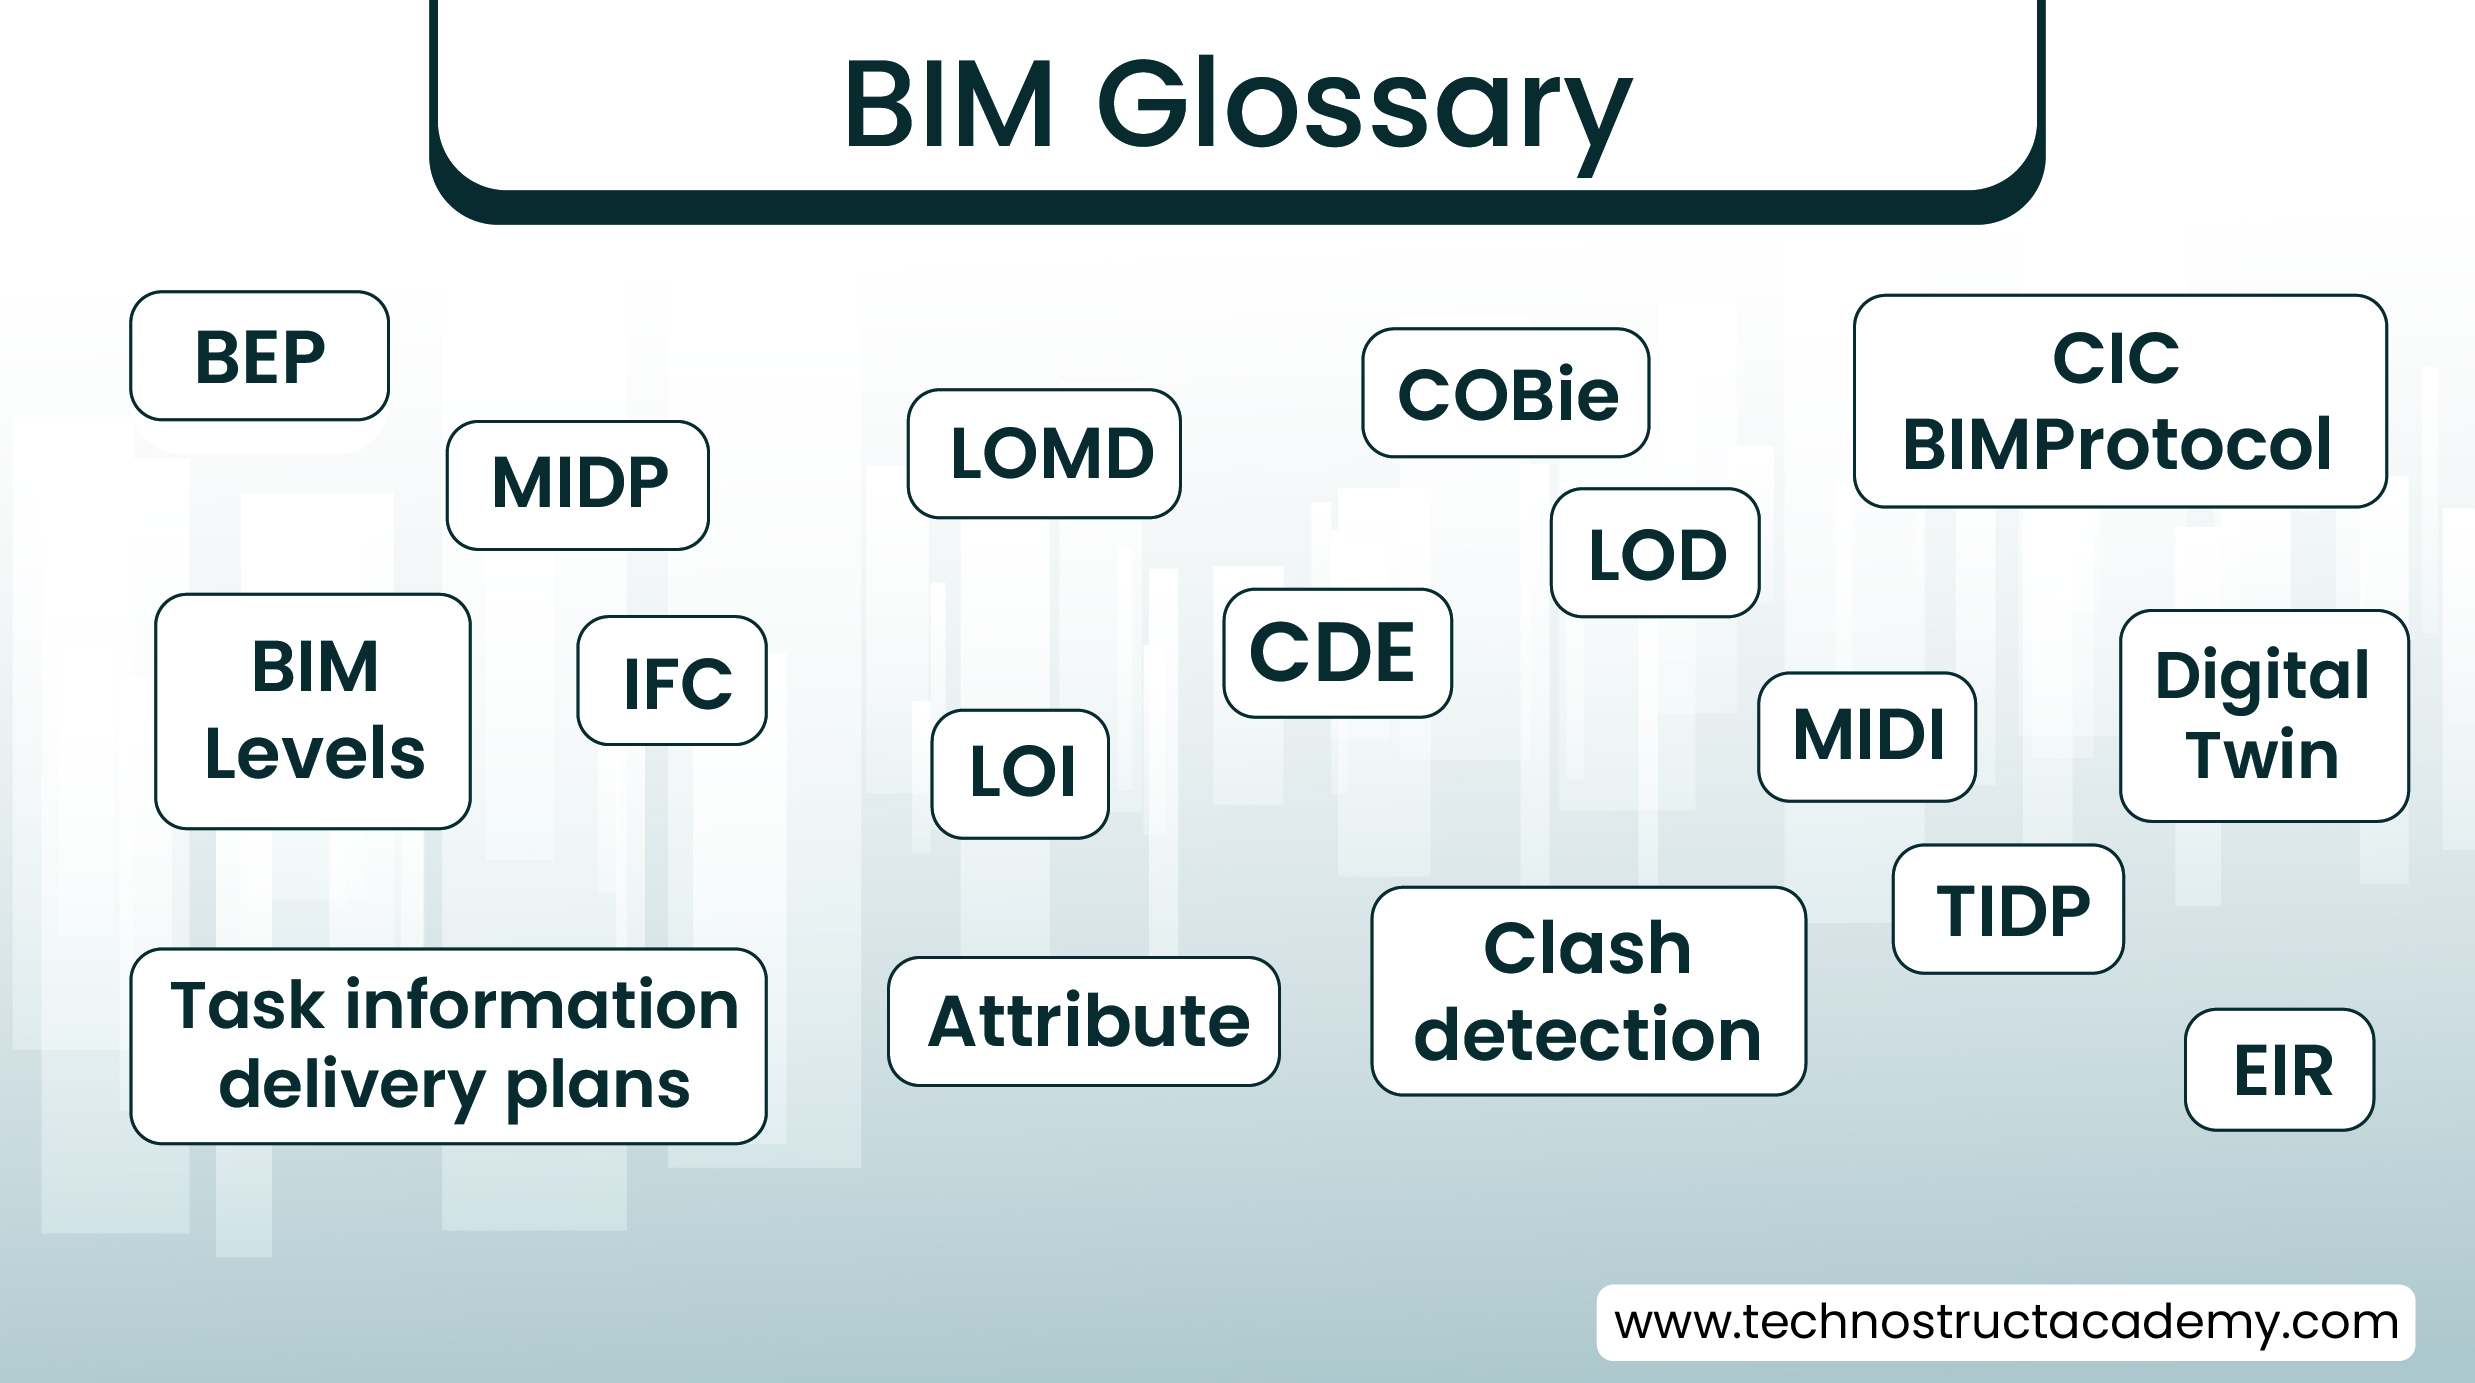 BIM Glossary